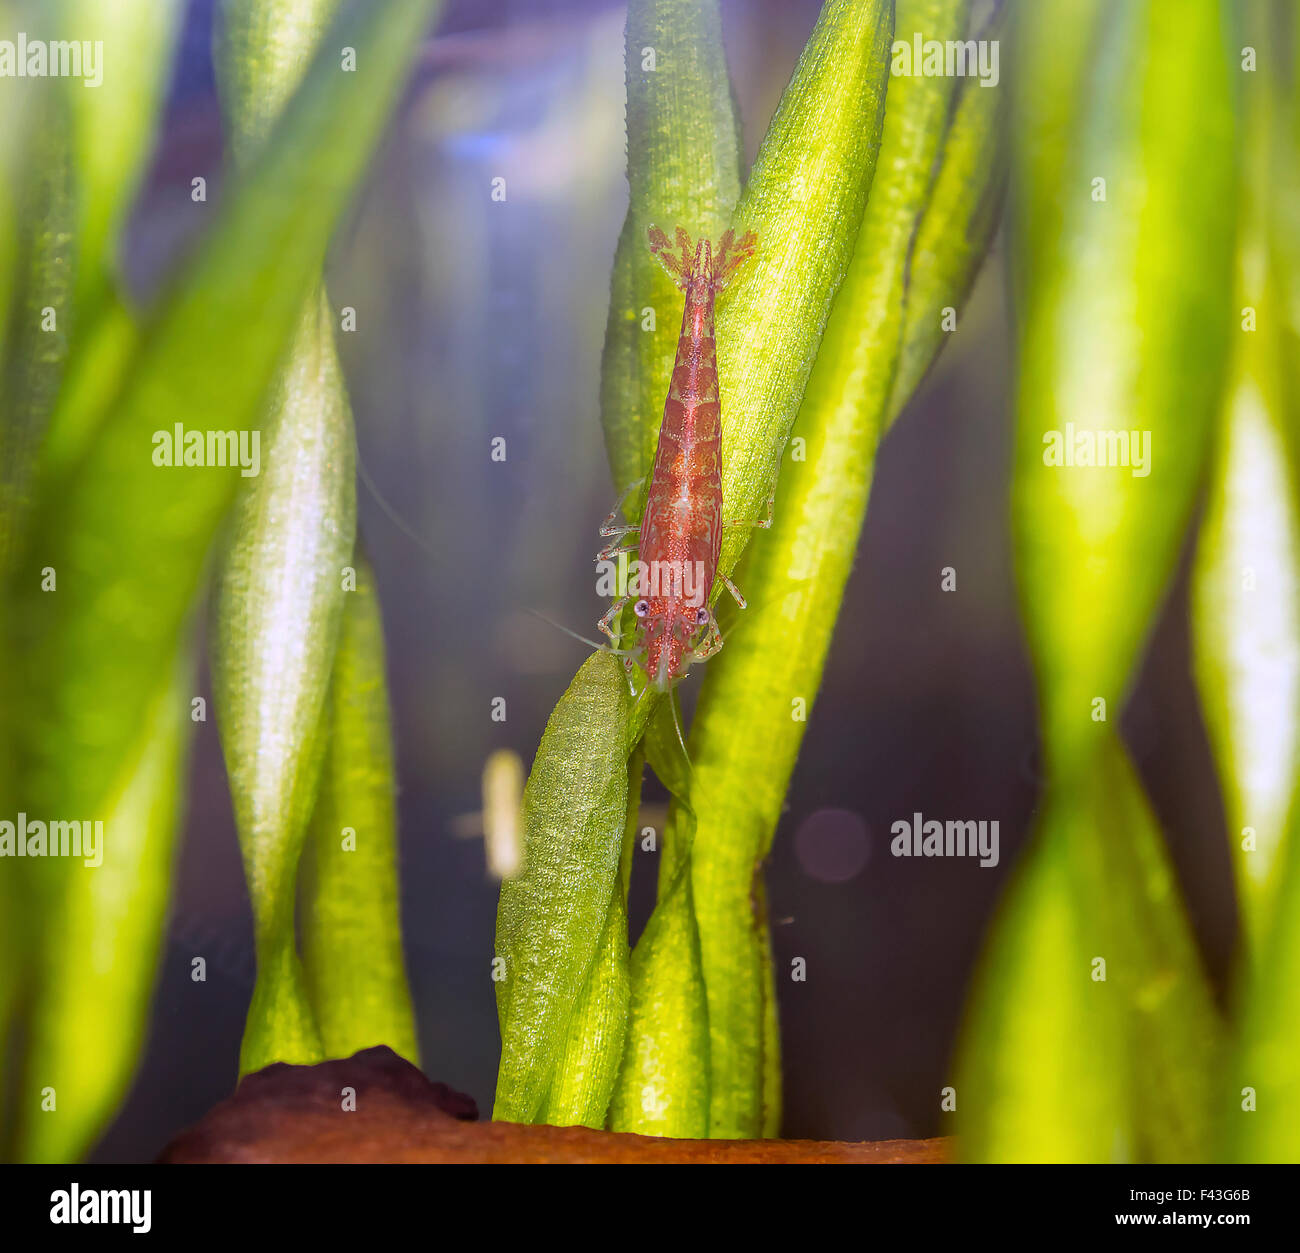 Cherry shrimp Stock Photo